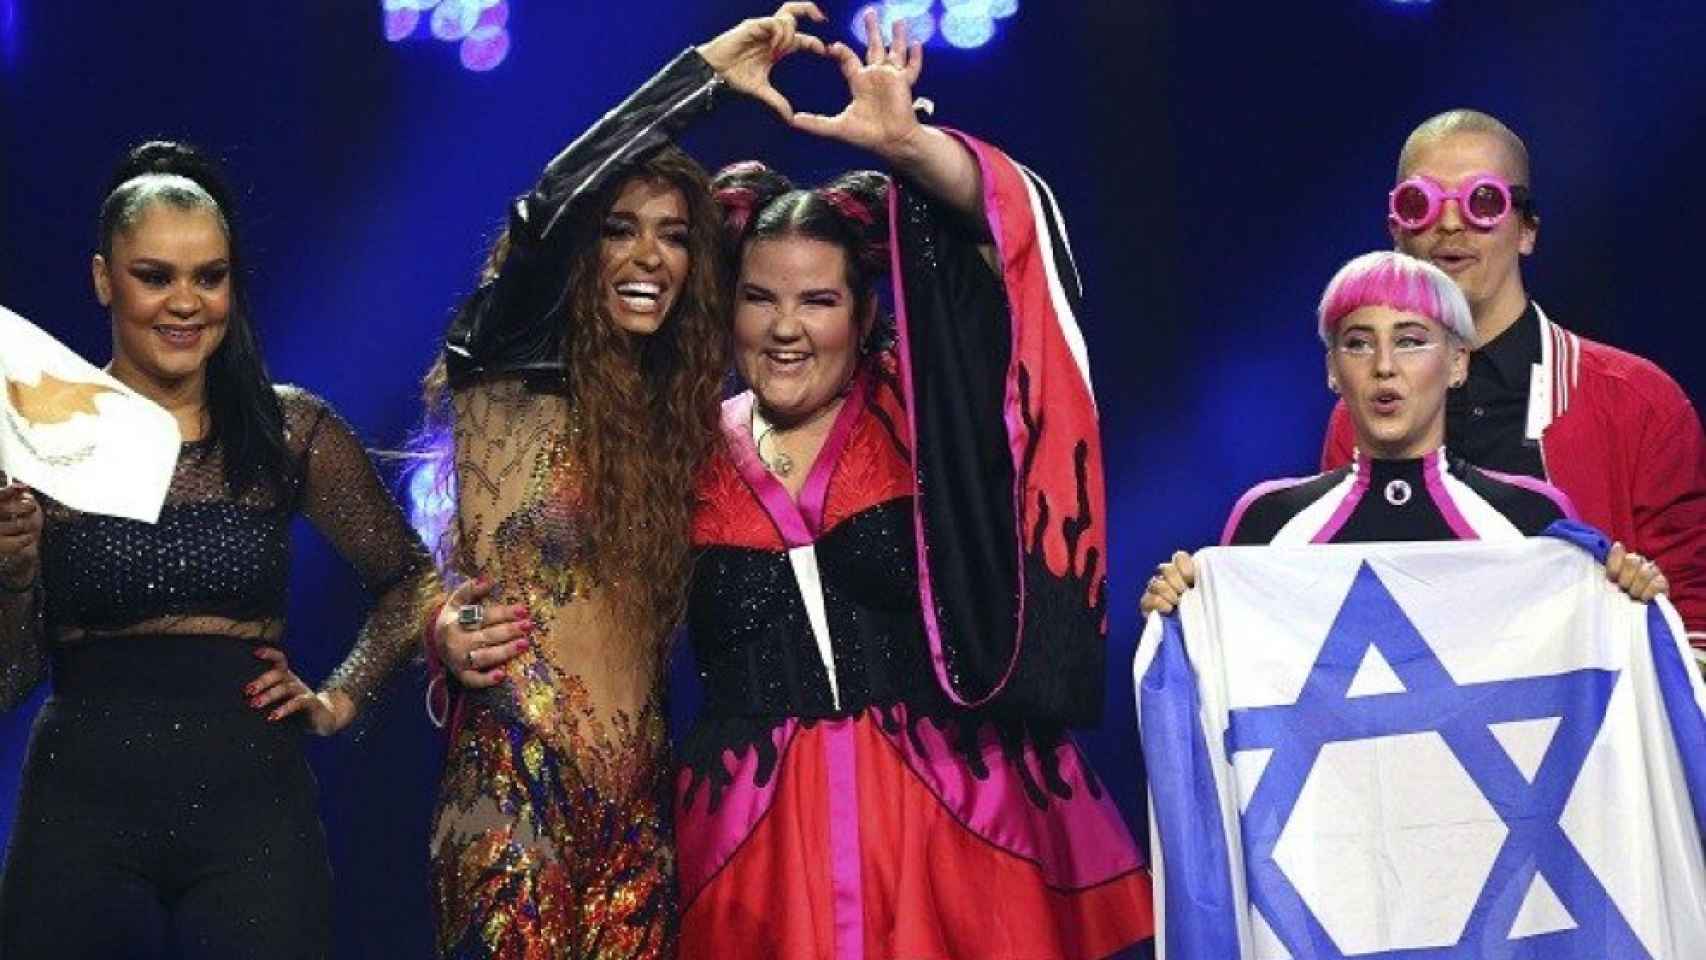 Israel pagará finalmente el deposito para albergar Eurovisión 2019